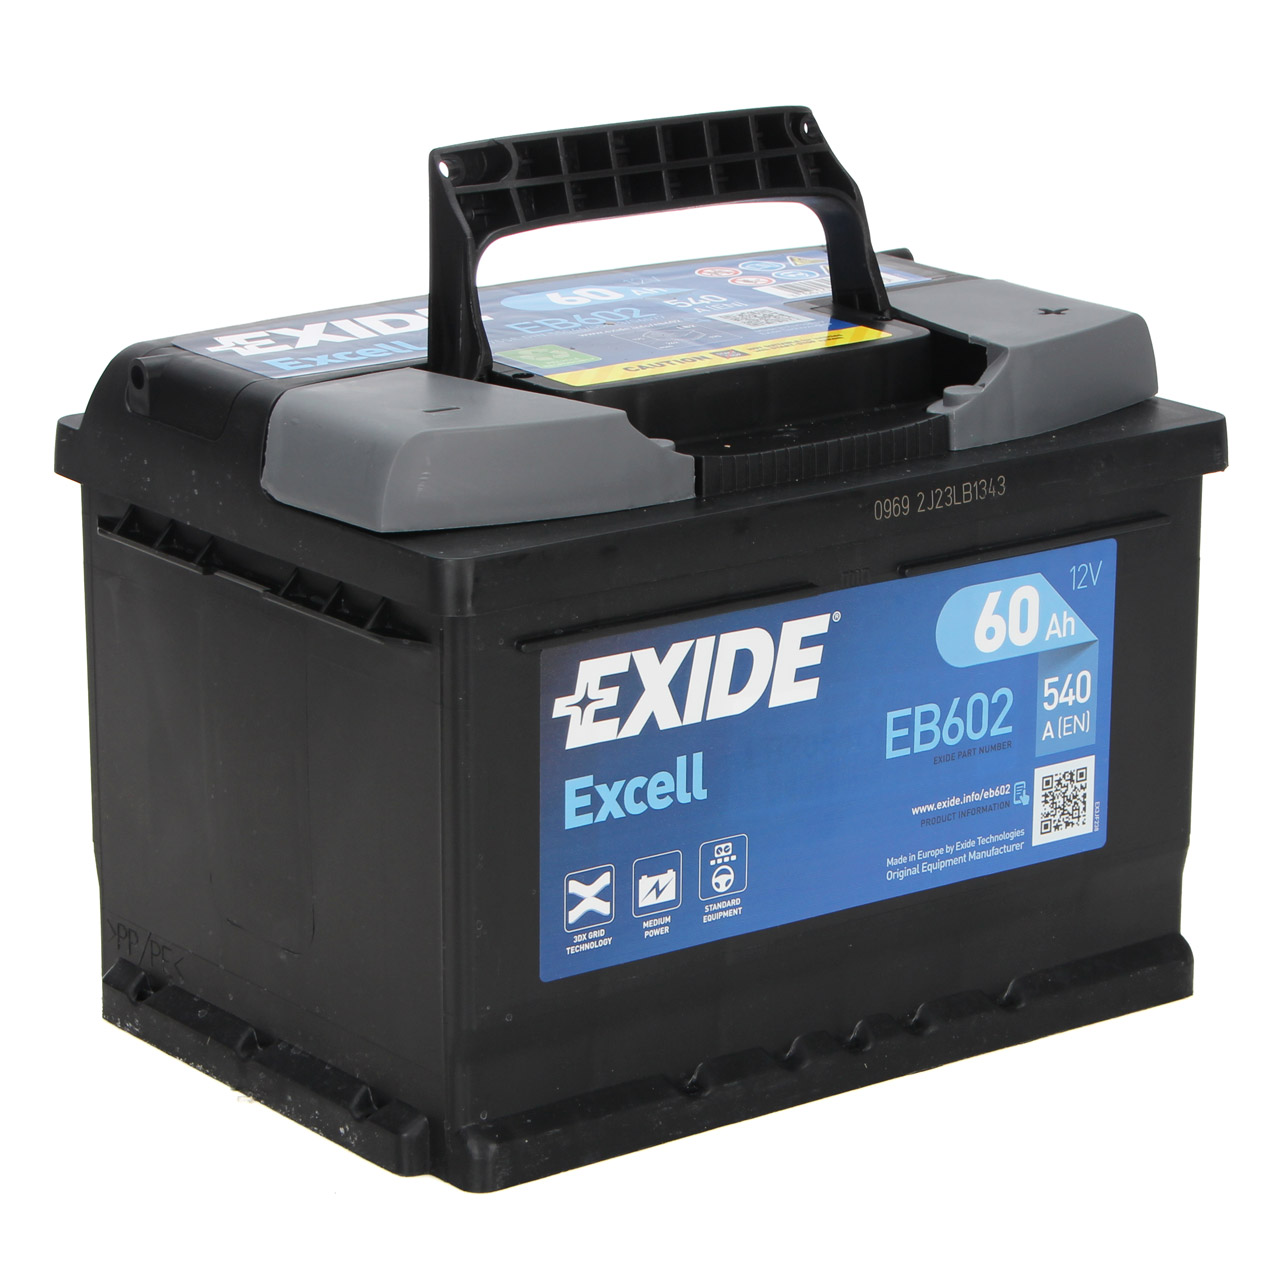 EXIDE Starterbatterien / Autobatterien - EB602 